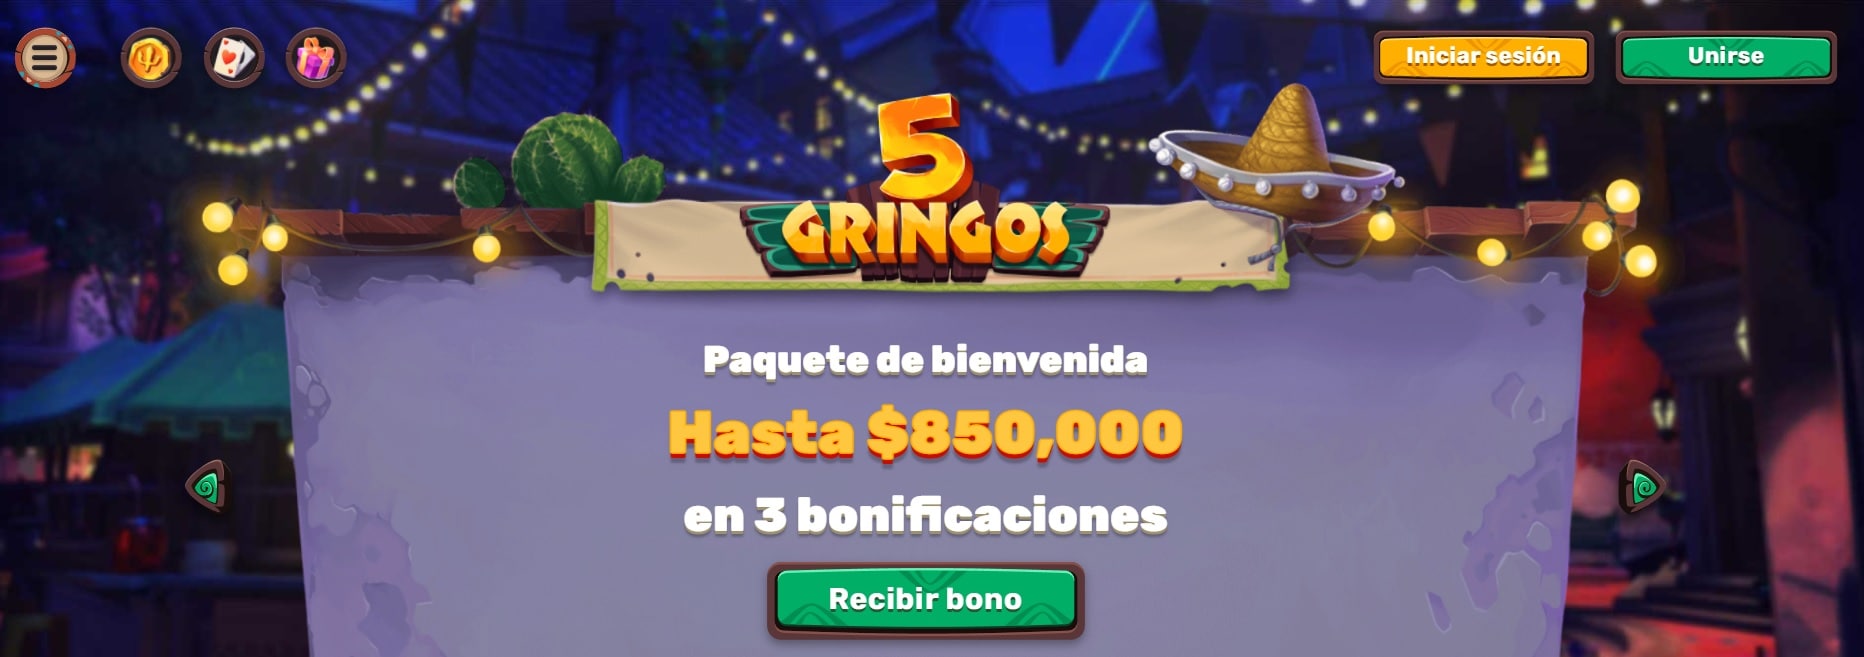 casinos online chile 5gringos